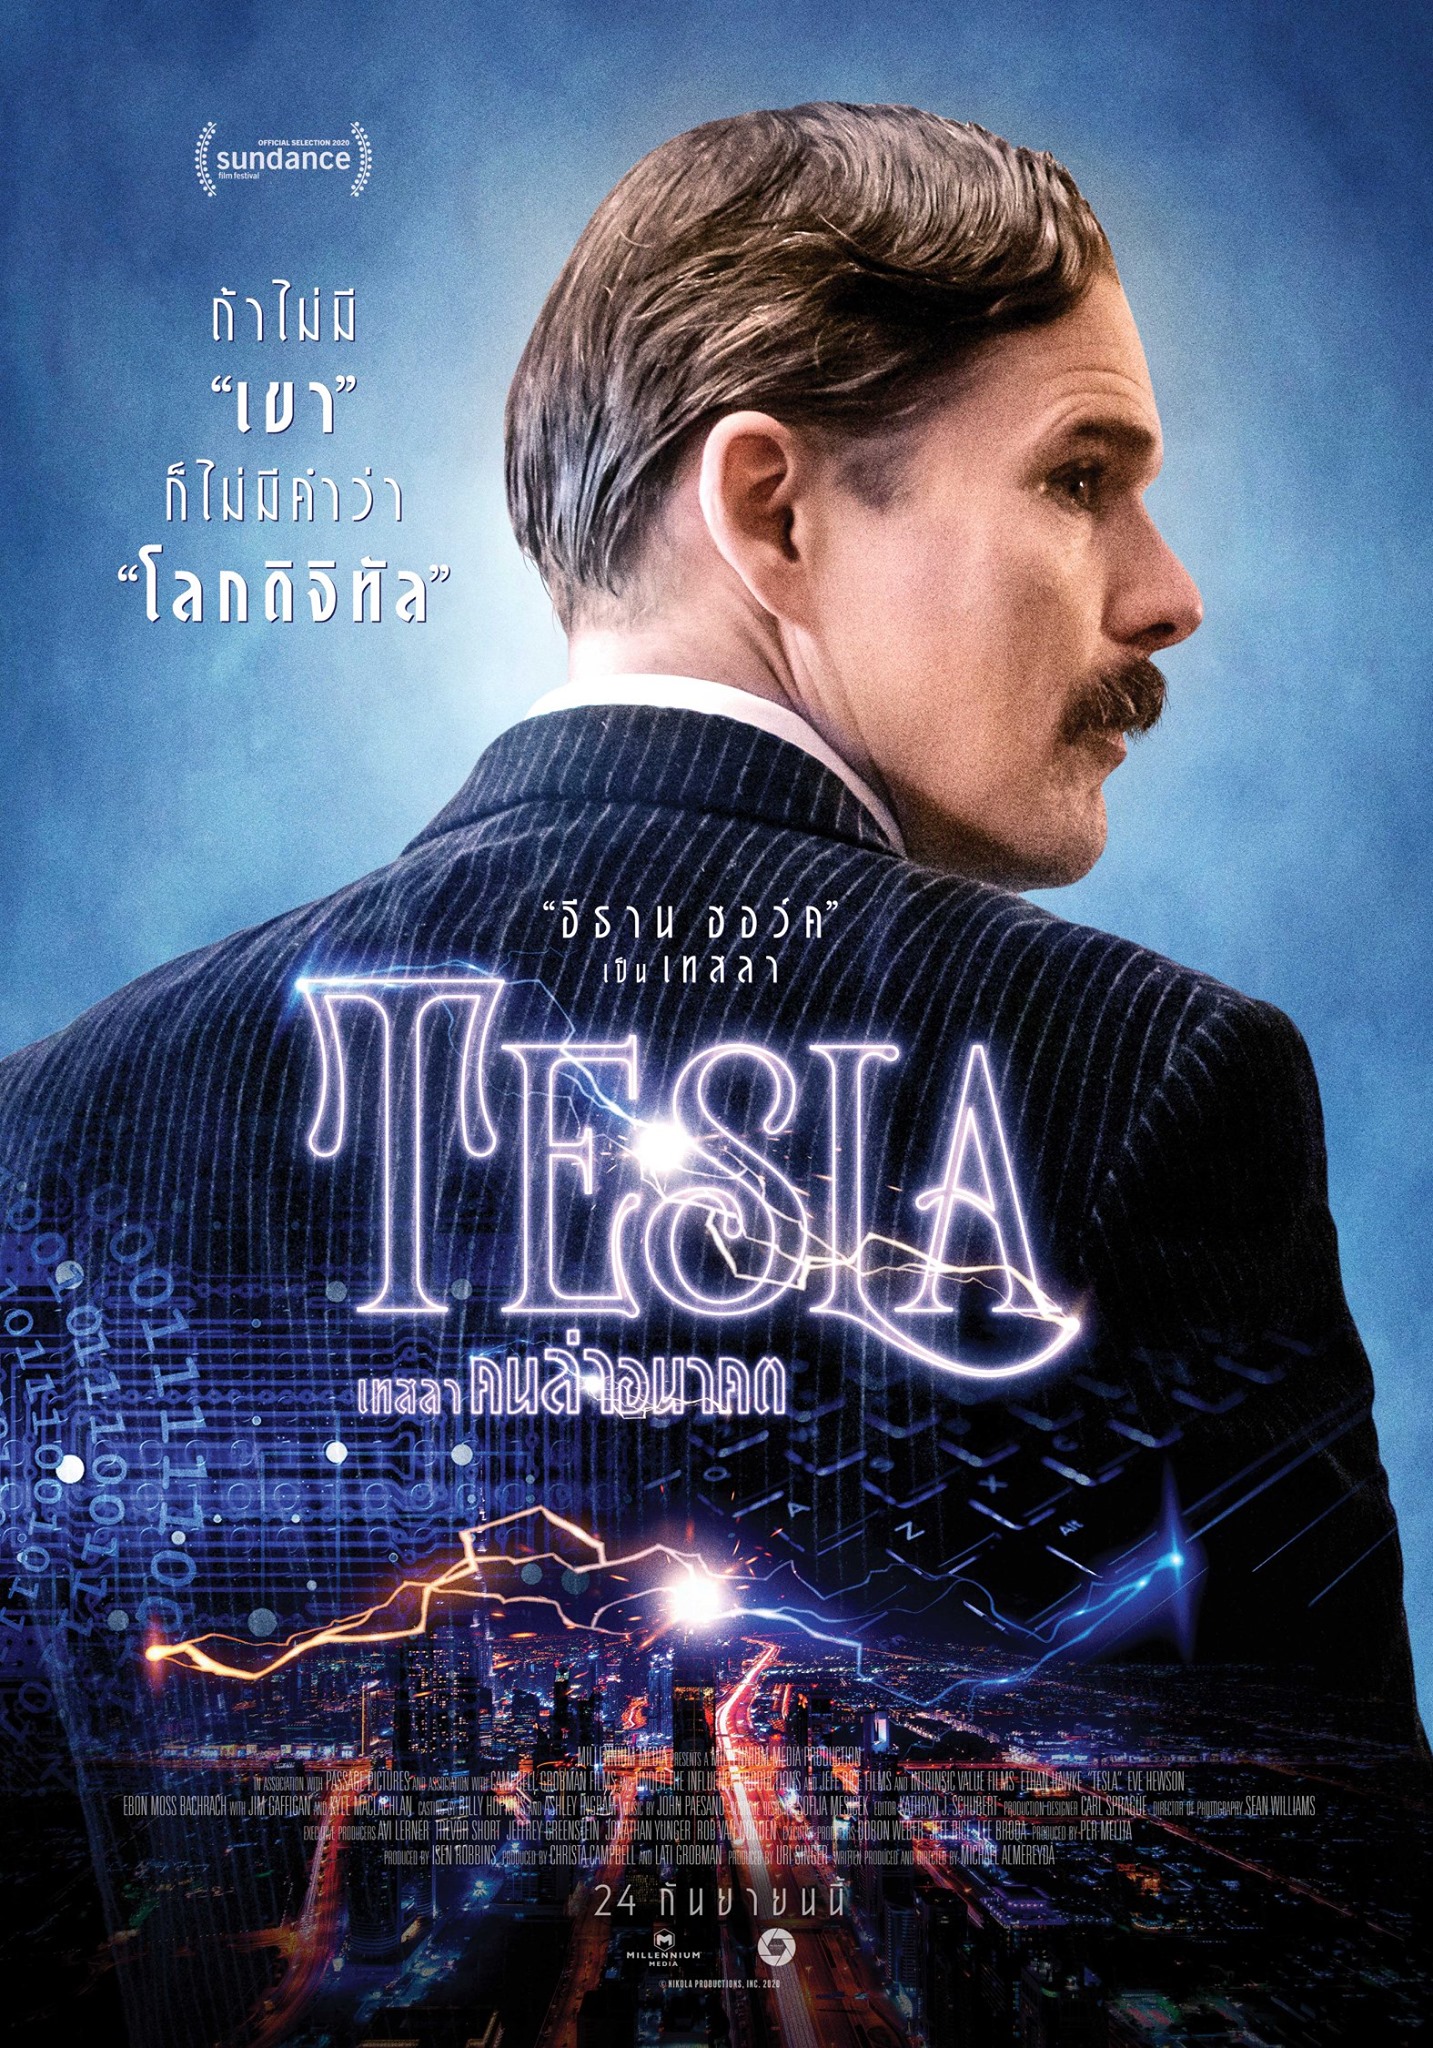 ดูหนังออนไลน์ฟรี Tesla | เทสลา คนล่าอนาคต (2020)